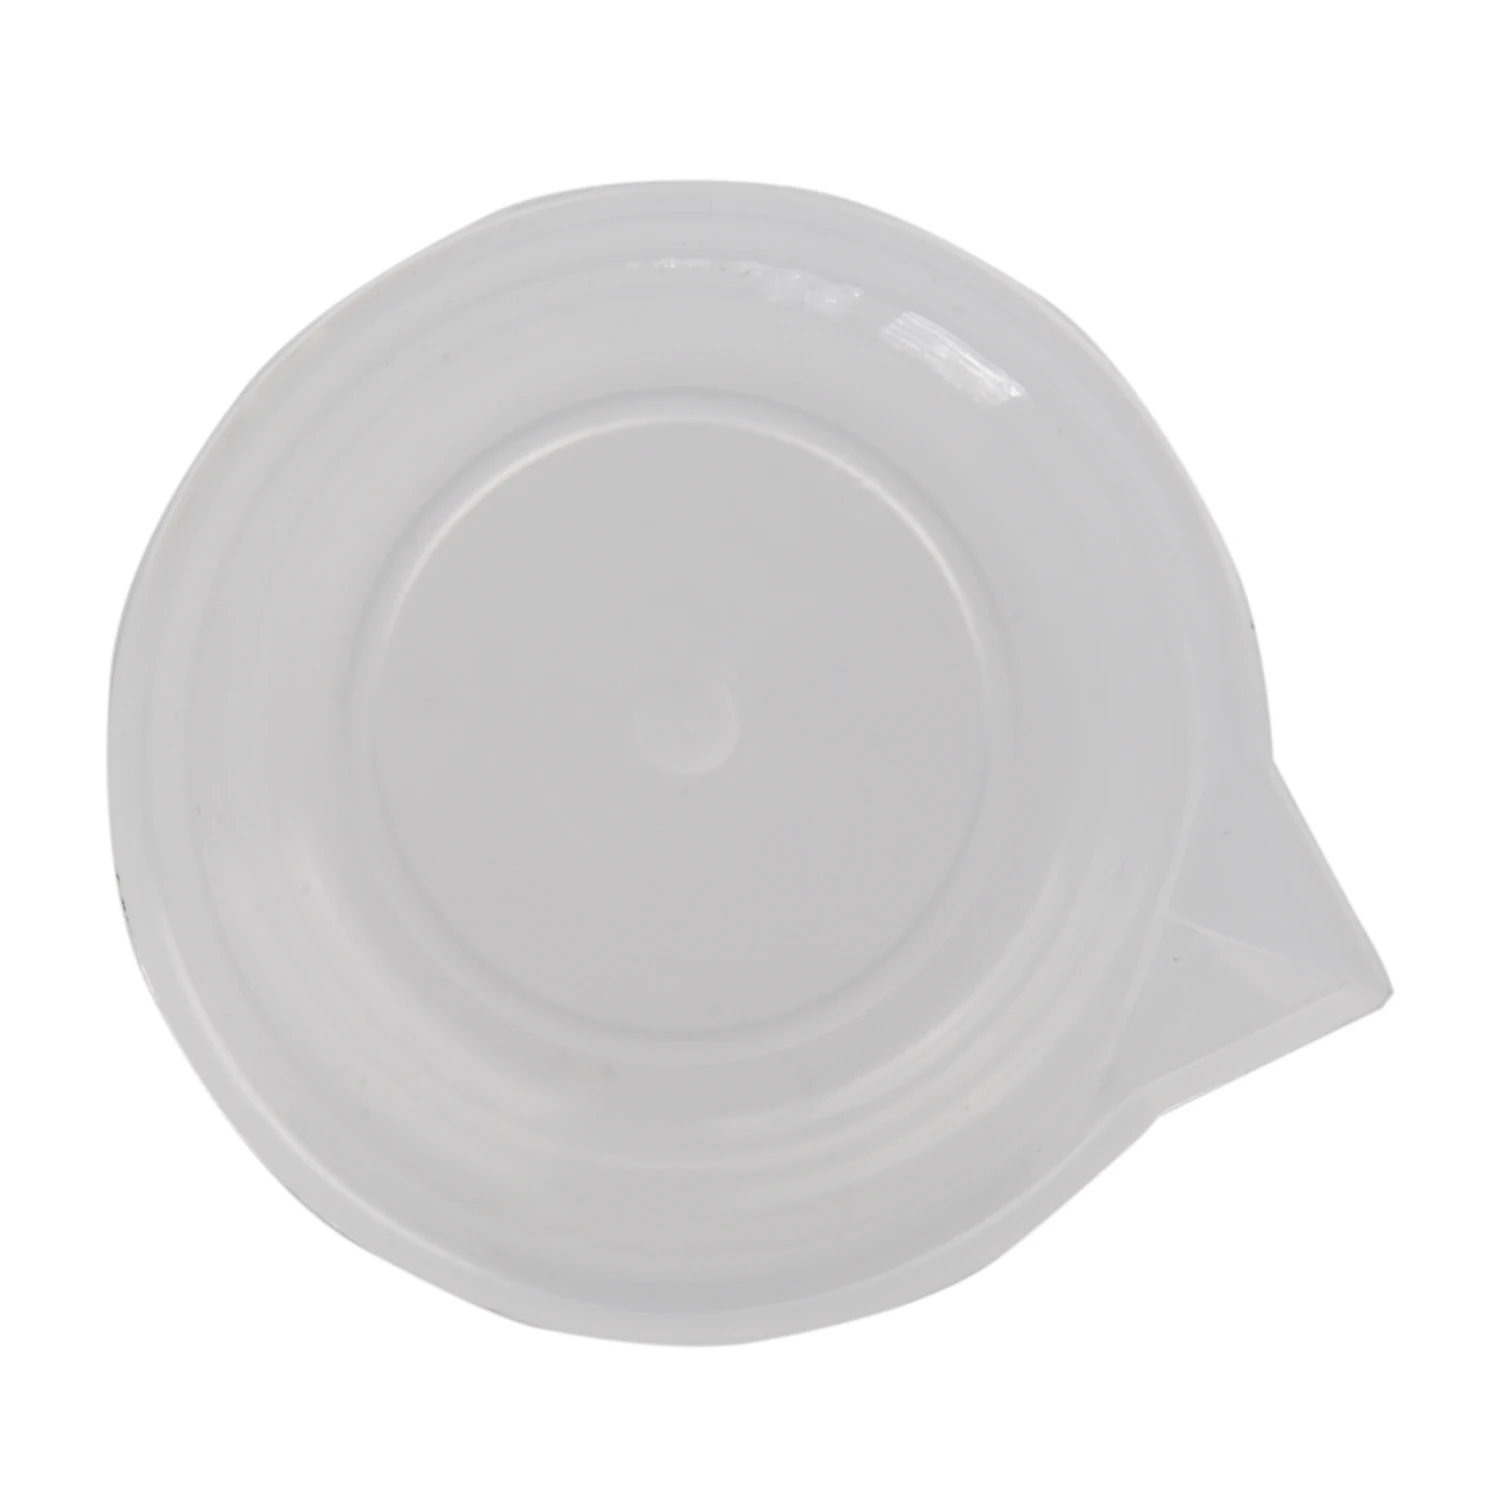 Прозрачный белый пластик 100 мл мерный стаканчик для кухни лаборатории